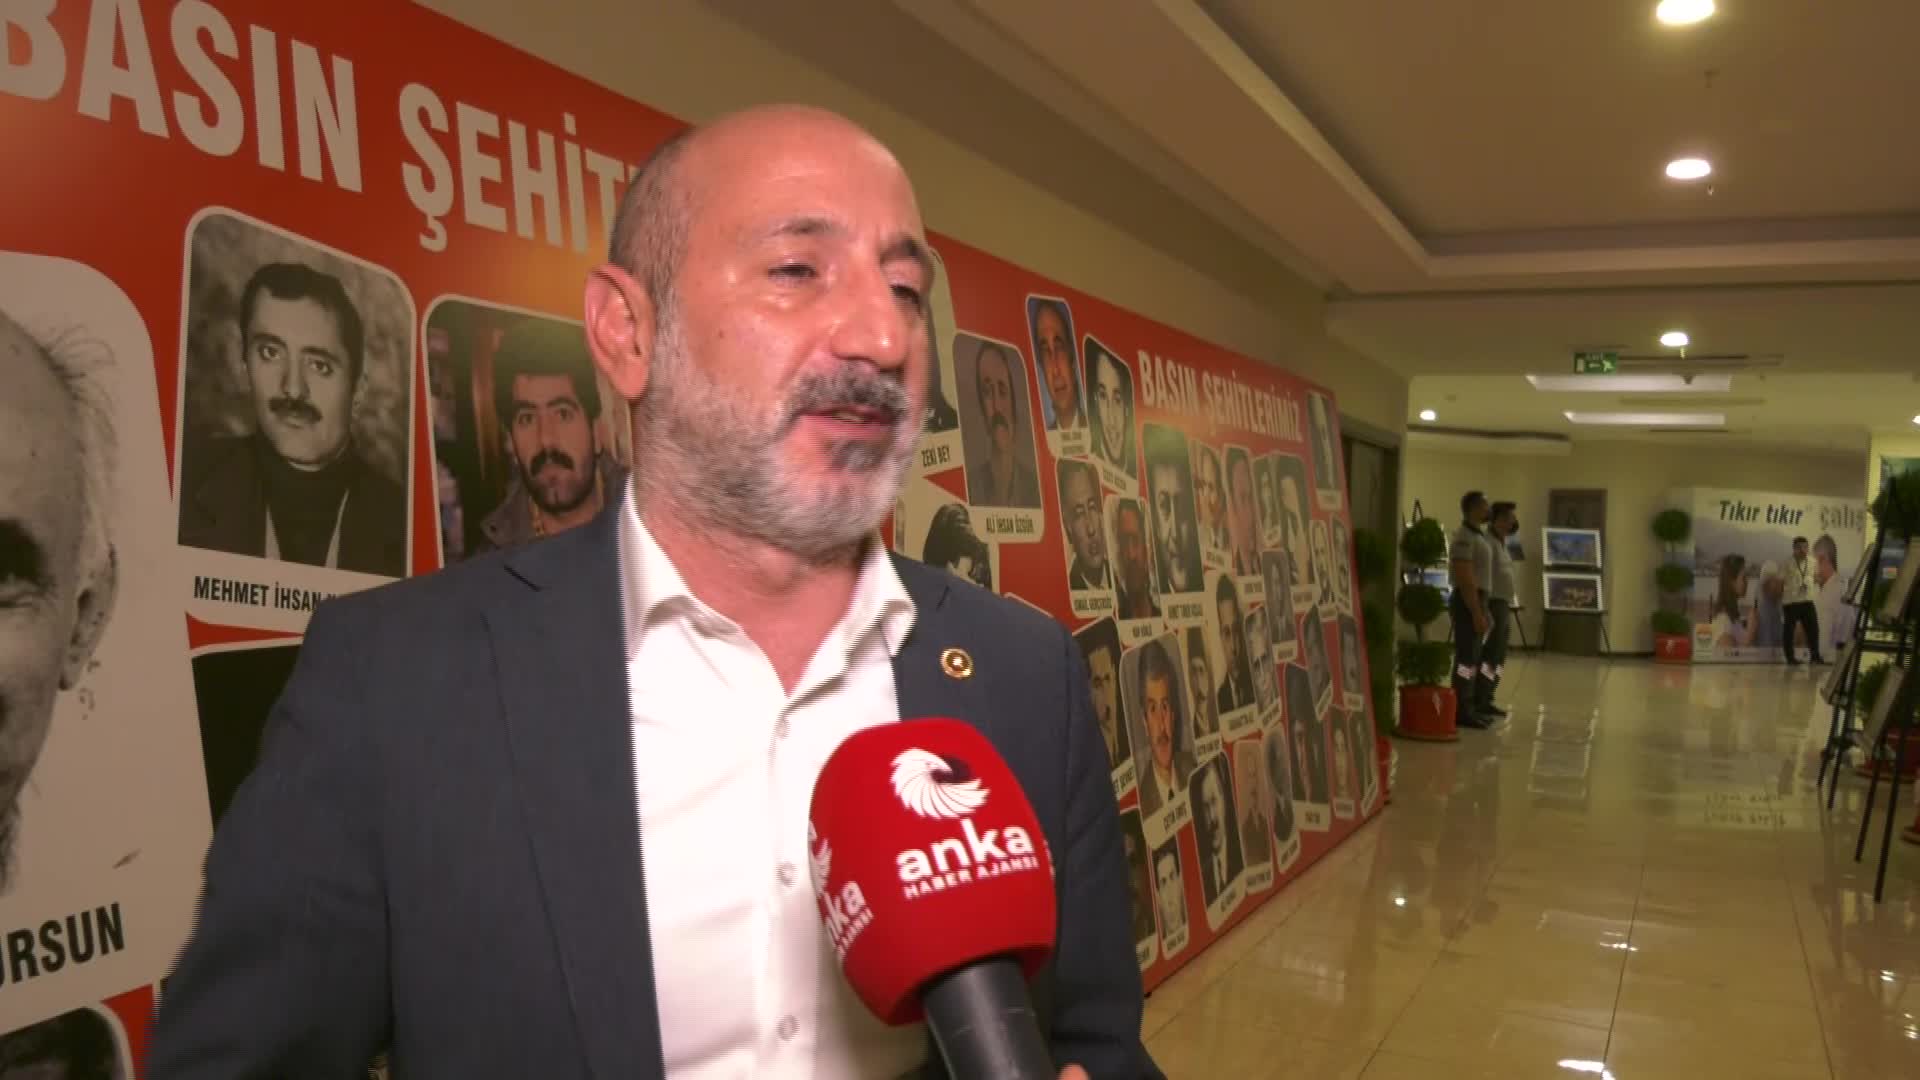 CHP’den Kılıçdaroğlu'nun memurlara uyarısının gerekçesi: "Bize gelen duyumlar var. Giderayak her türlü filmi çeviriyorlar"